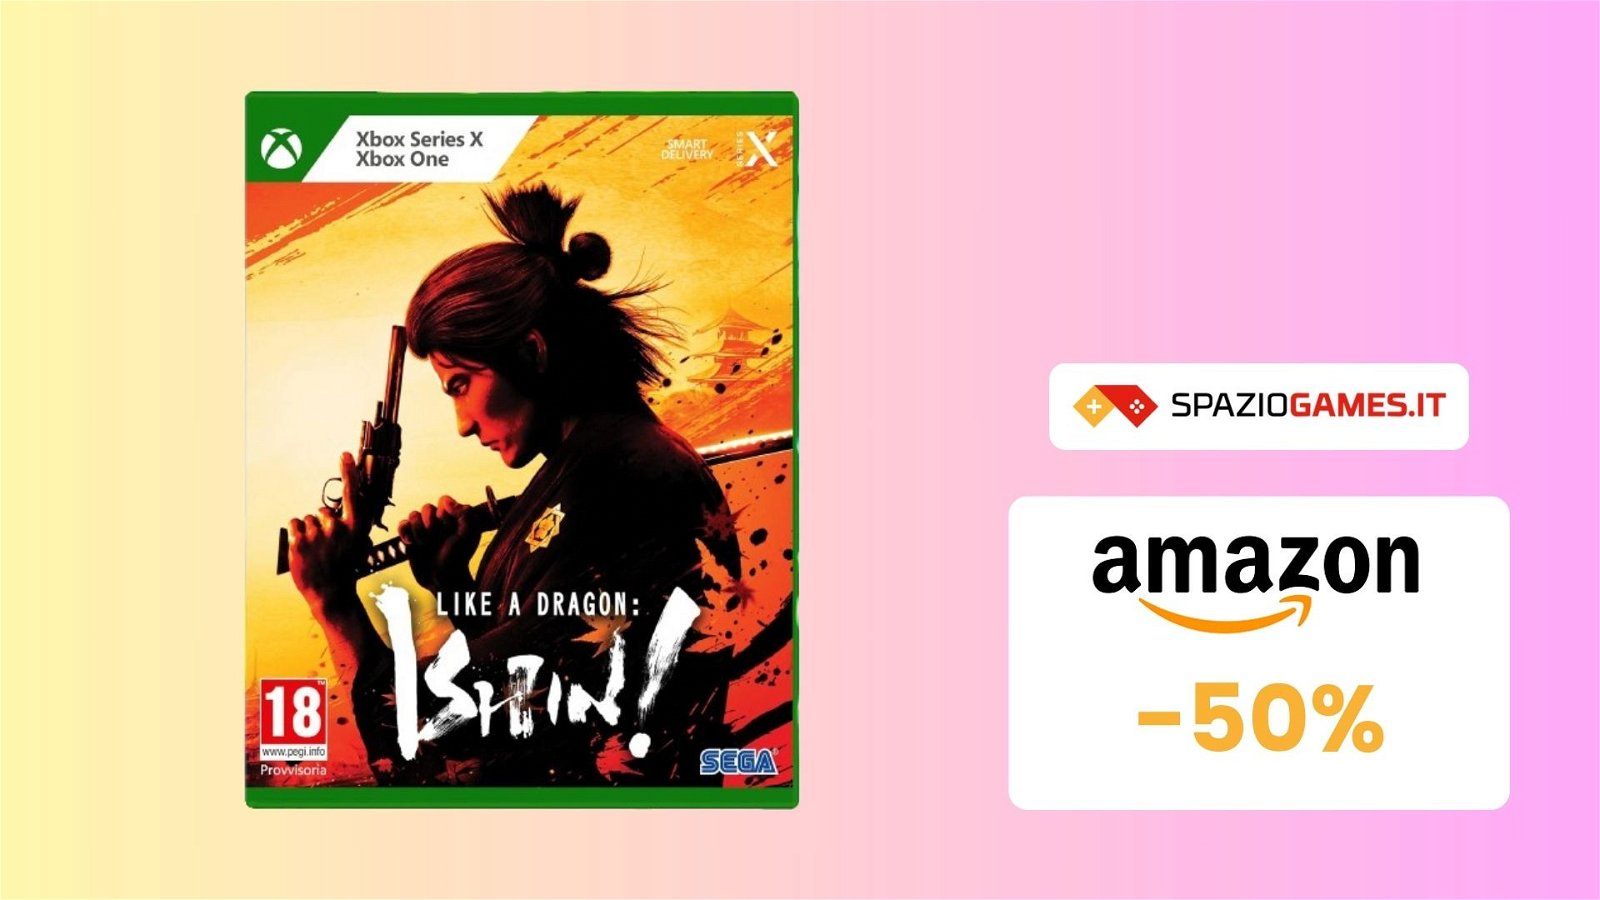 Like a Dragon: Ishin! per Xbox oggi vi costa LA META'! Soli 29€!